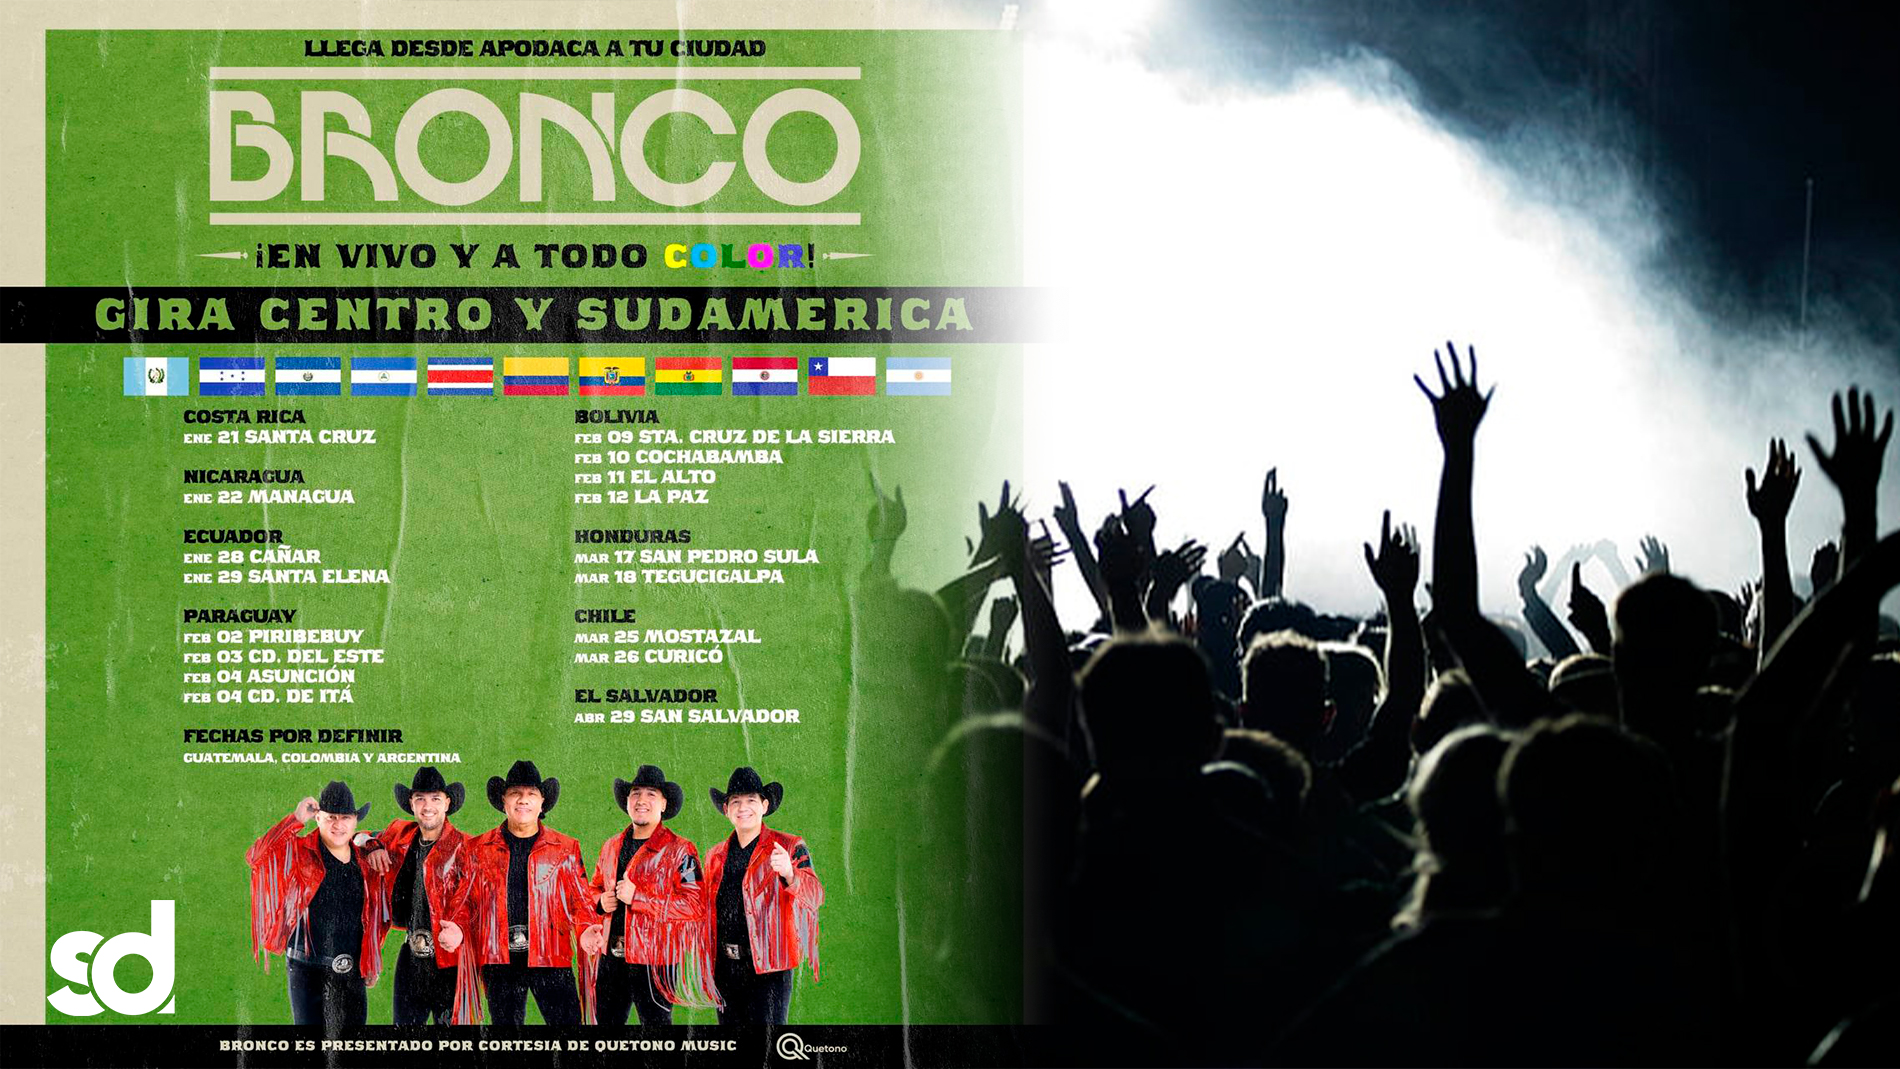 Tenemos fecha asegurada en El Salvador para concierto de Bronco